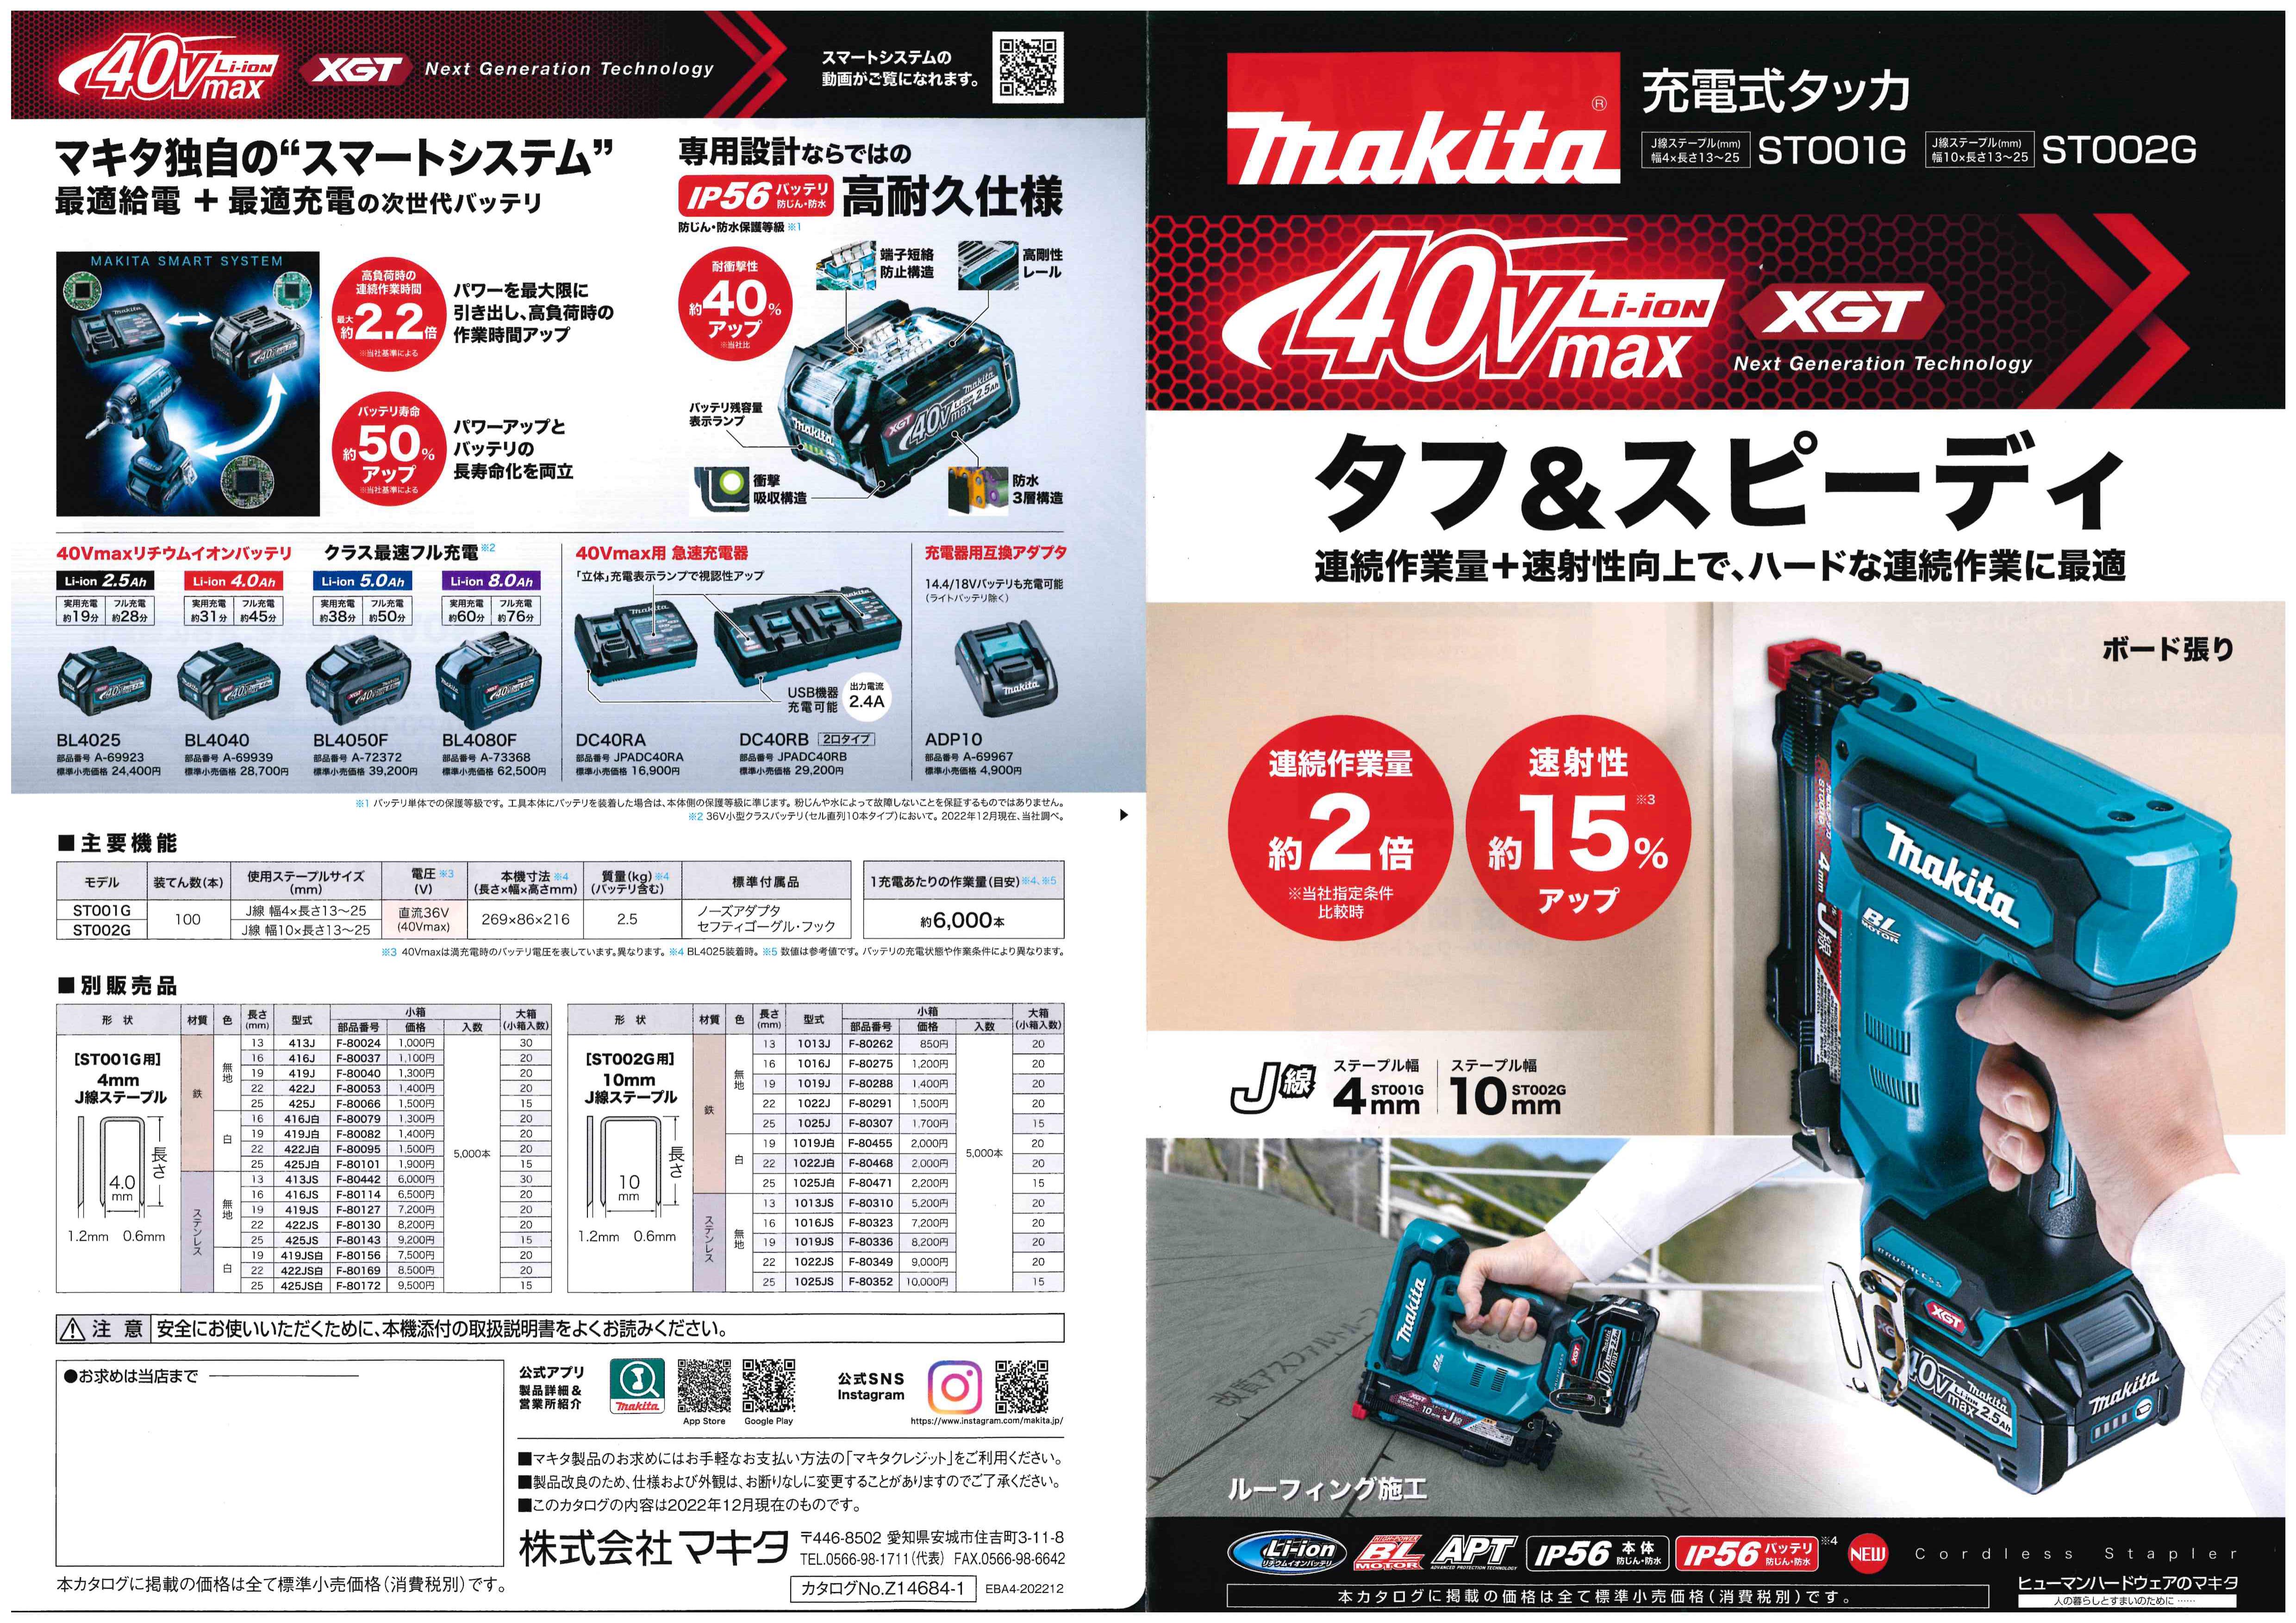 マキタ 40V 4mm J線タッカ フルセット品